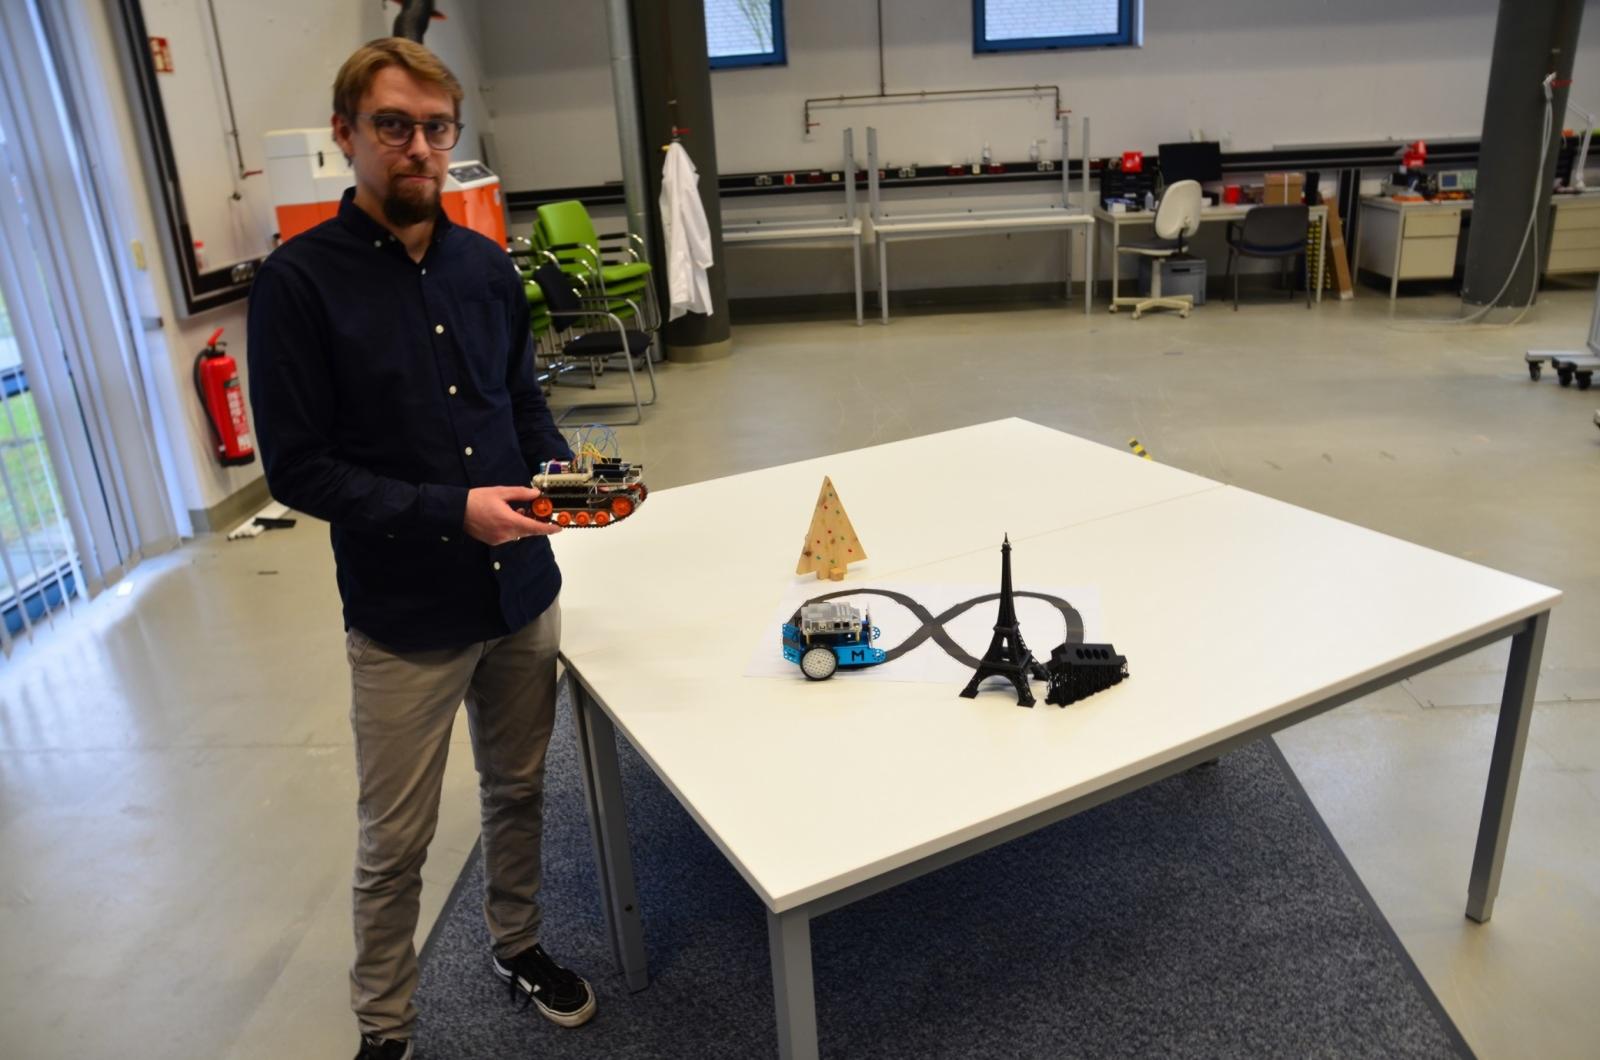 Modelle drucken, Roboter zusammenbauen, Ideen ausprobieren. Das soll Studierenden und Angehörigen der FH Münster im MakerSpace ermöglicht werden. (Foto: FH Münster/Frederik Tebbe)